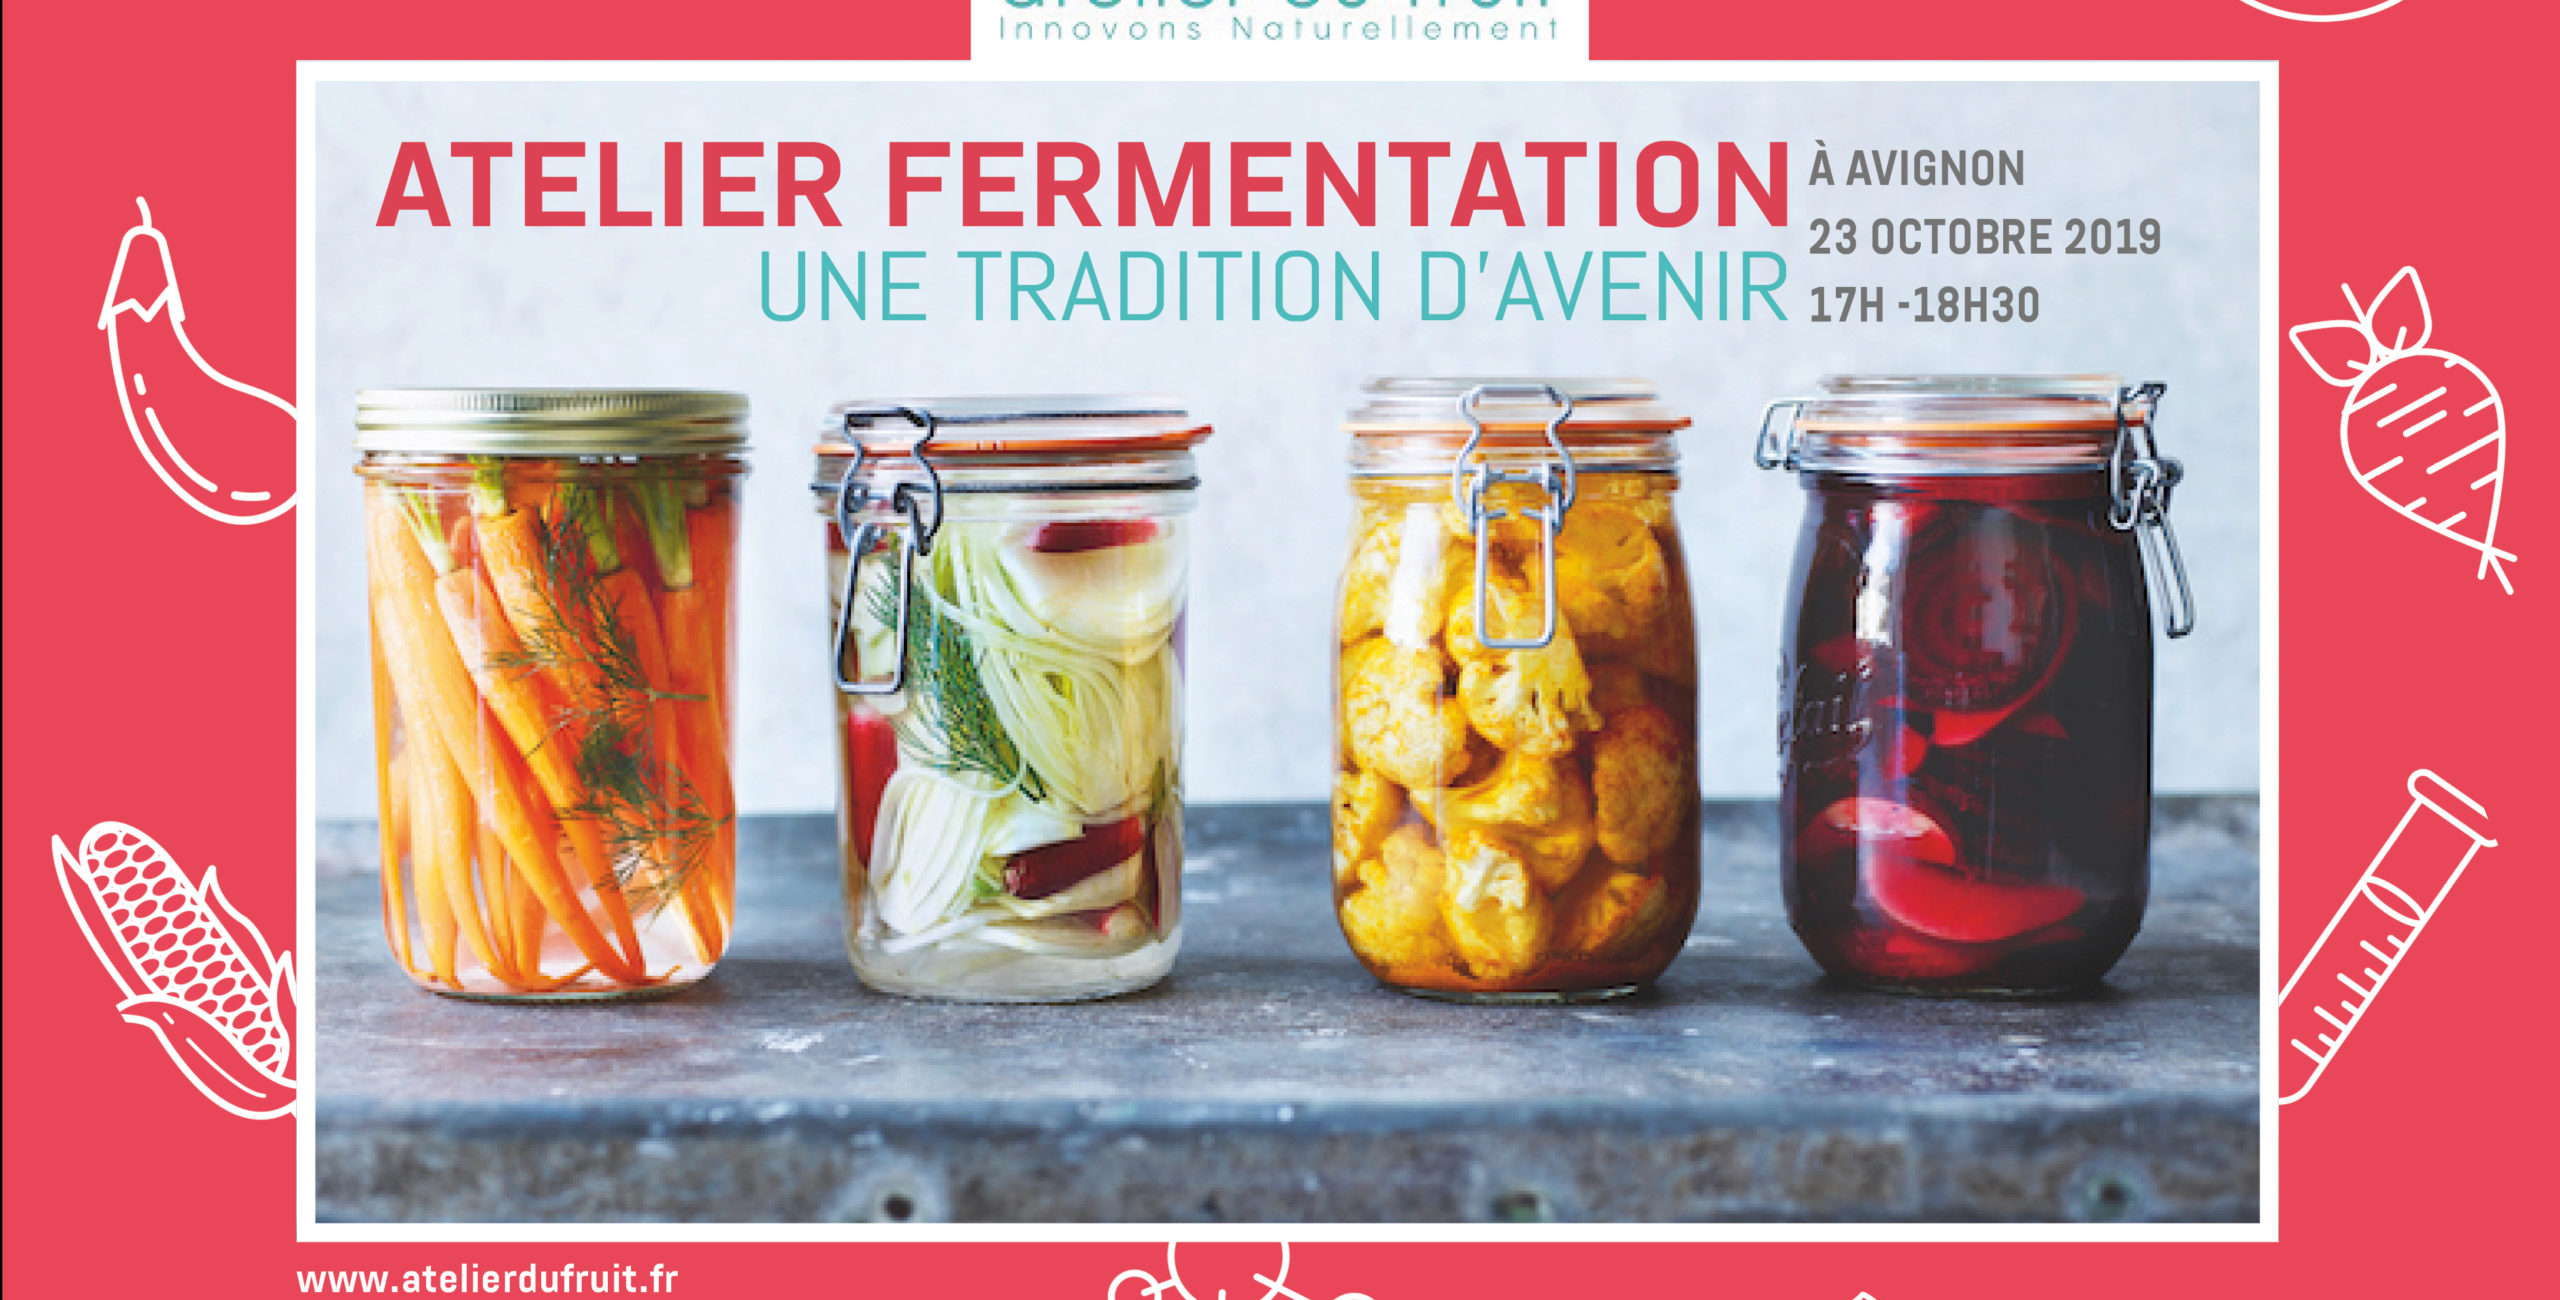 Visuel de l'atelier afterwork sur la fermentation, qui aura lieu le mercredi 23 octobre de 17h À 18h30 à Avignon, Salle René Char au GRAND AVIGNON - 84140 AVIGNON